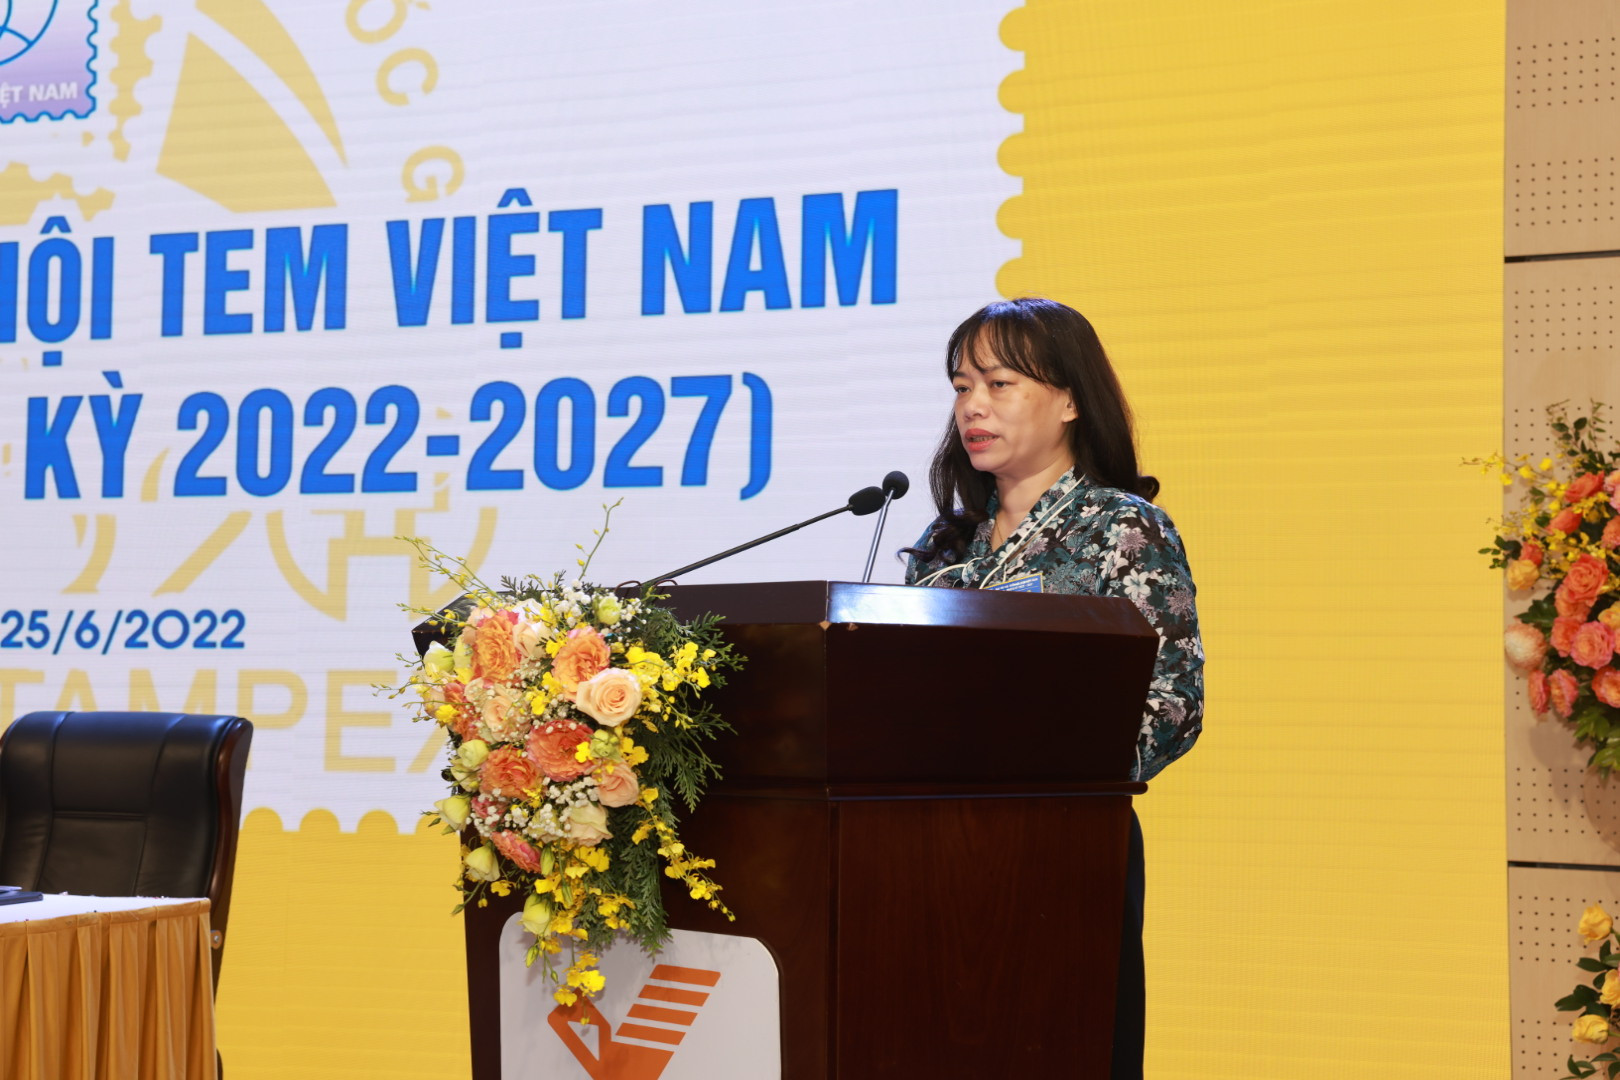 Phó Tổng Giám đốc Tổng công ty BĐVN làm Chủ tịch Hội tem Việt Nam - Ảnh 2.